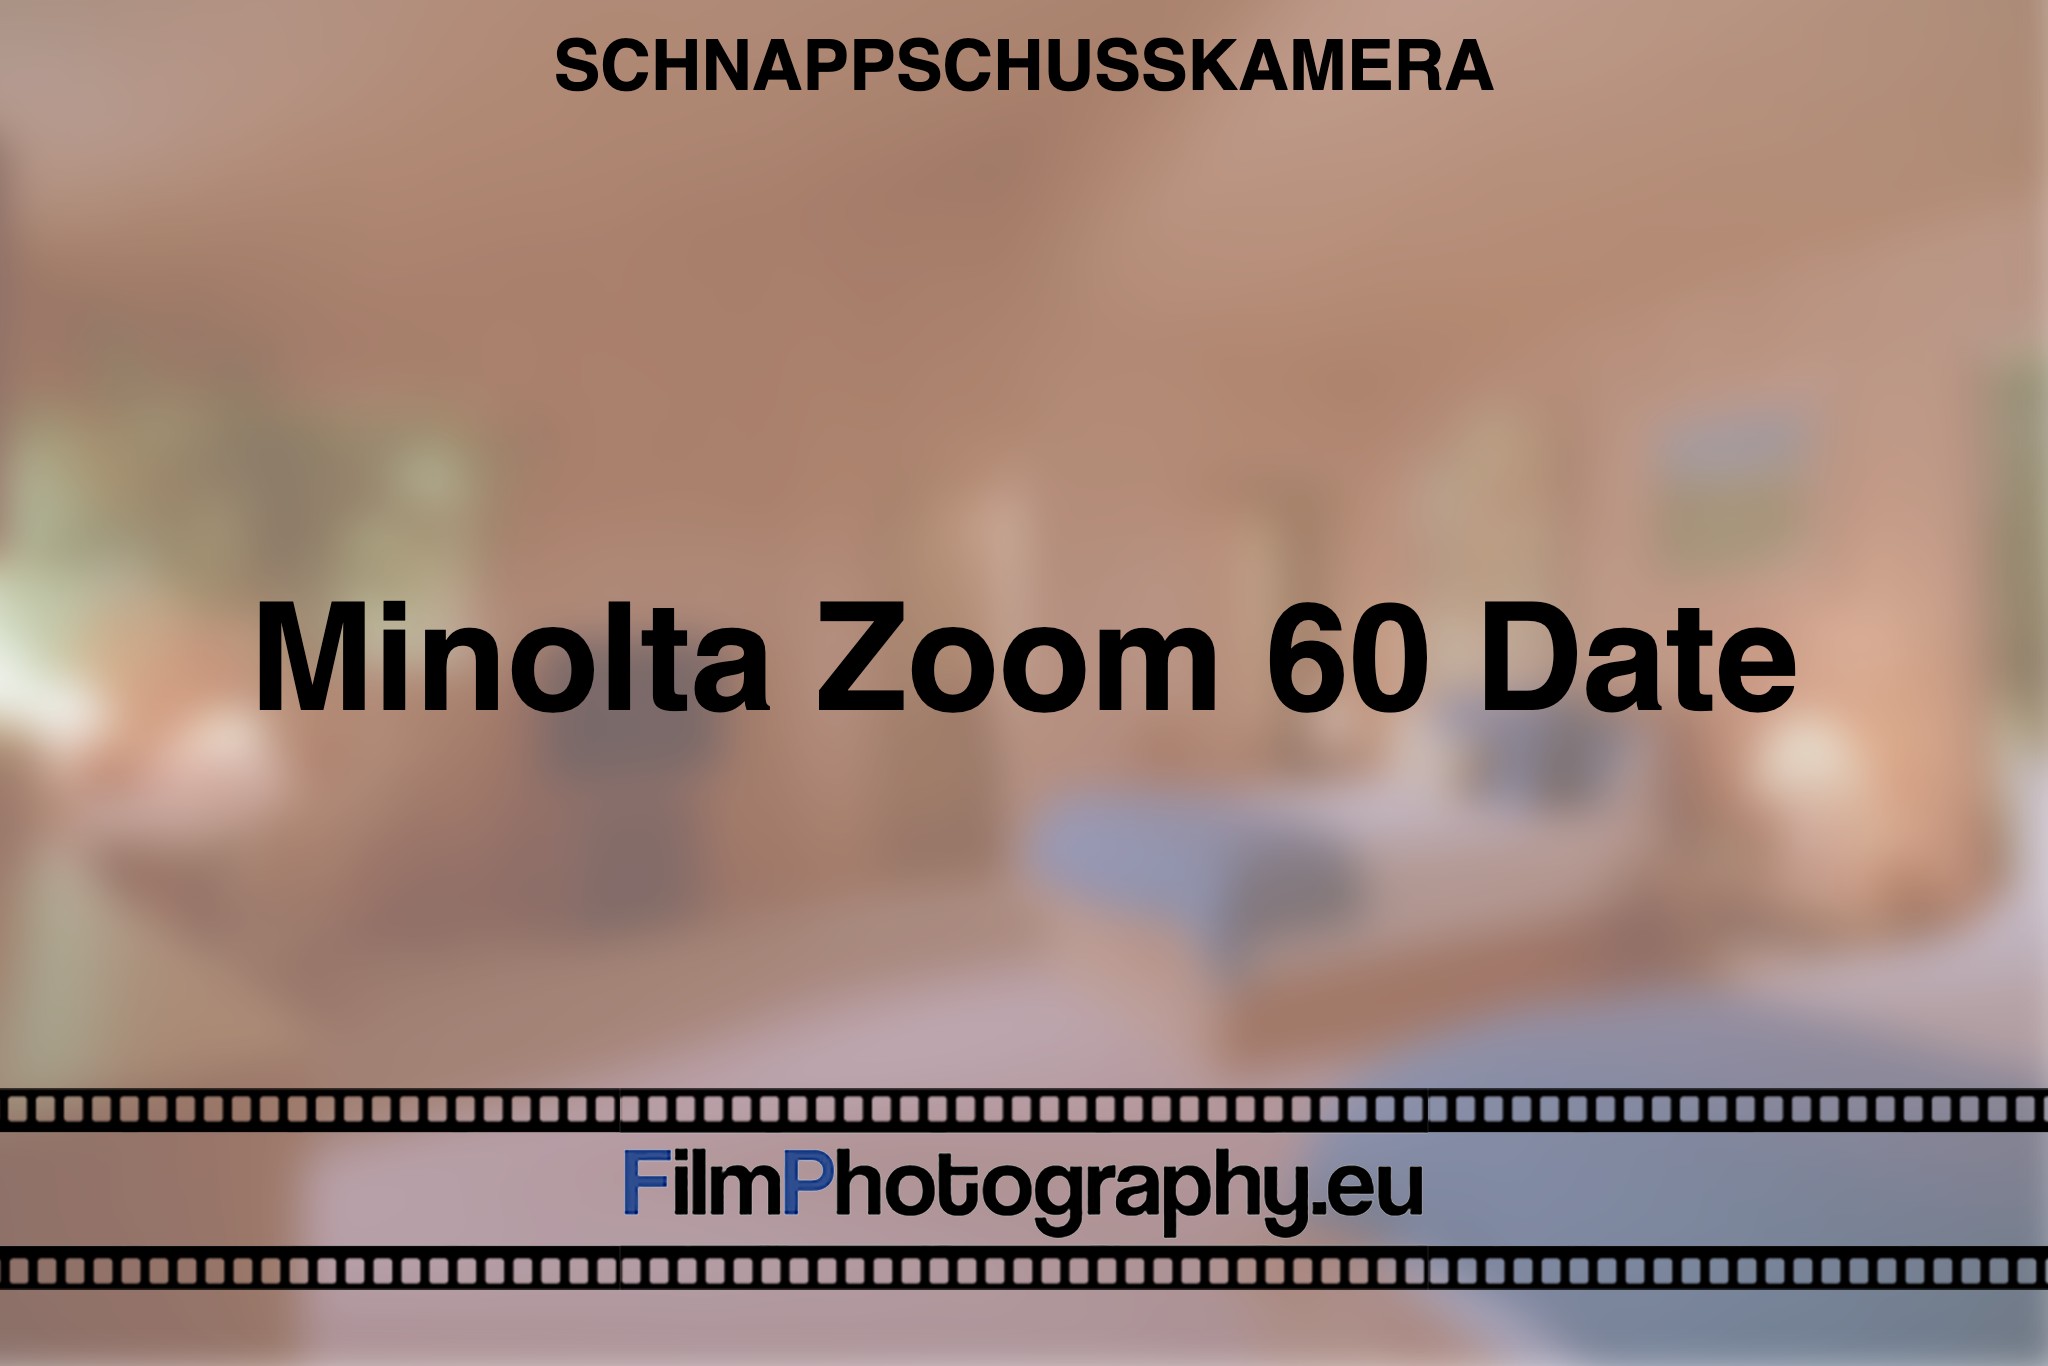 minolta-zoom-60-date-schnappschusskamera-bnv